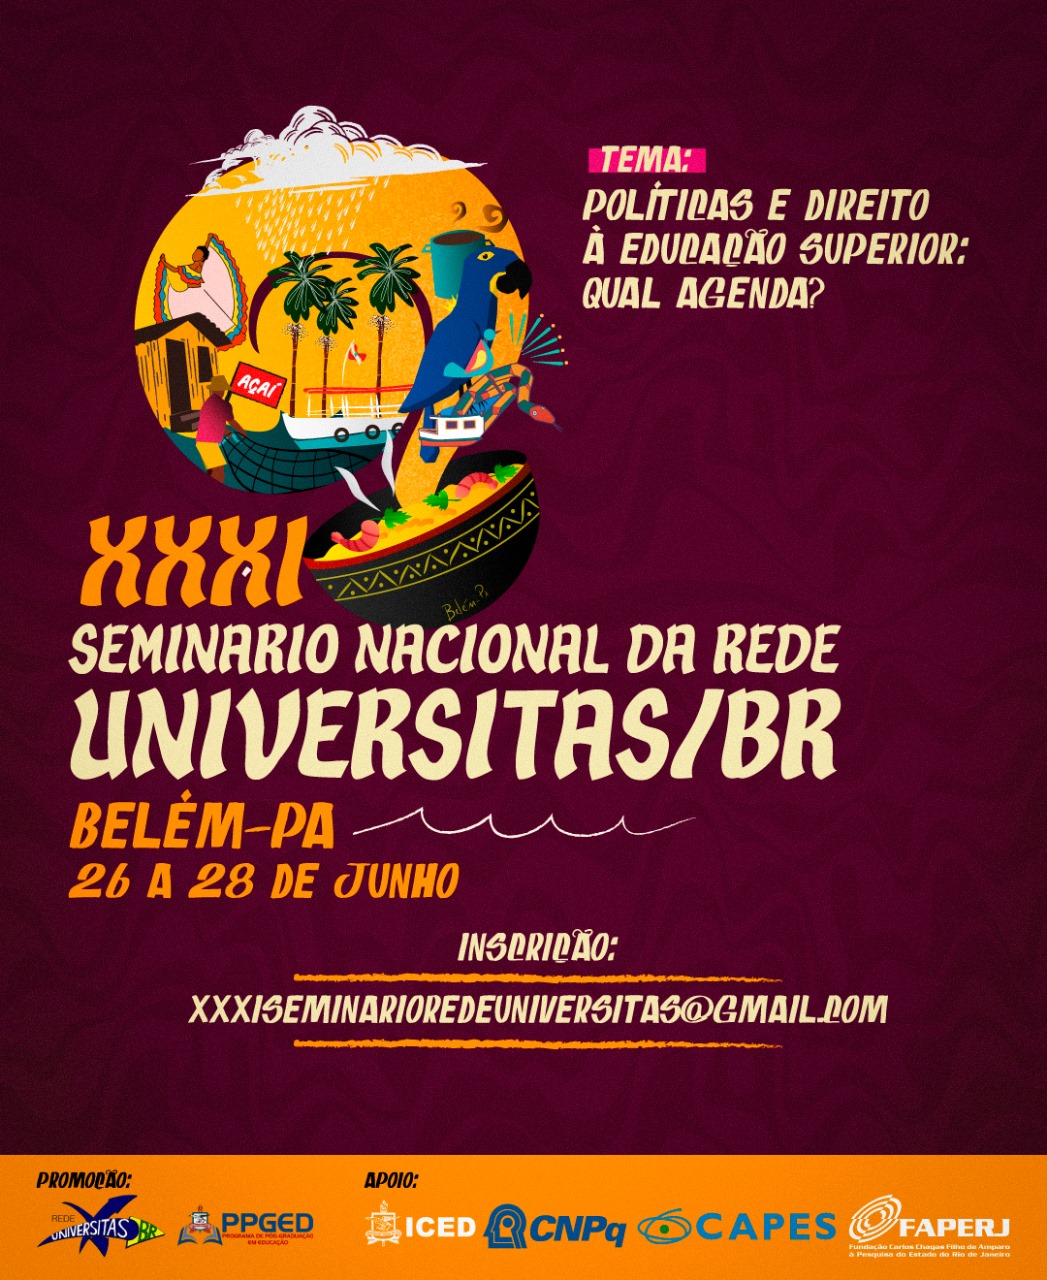 XXXI Seminrio Nacional da Rede Universitas/BR